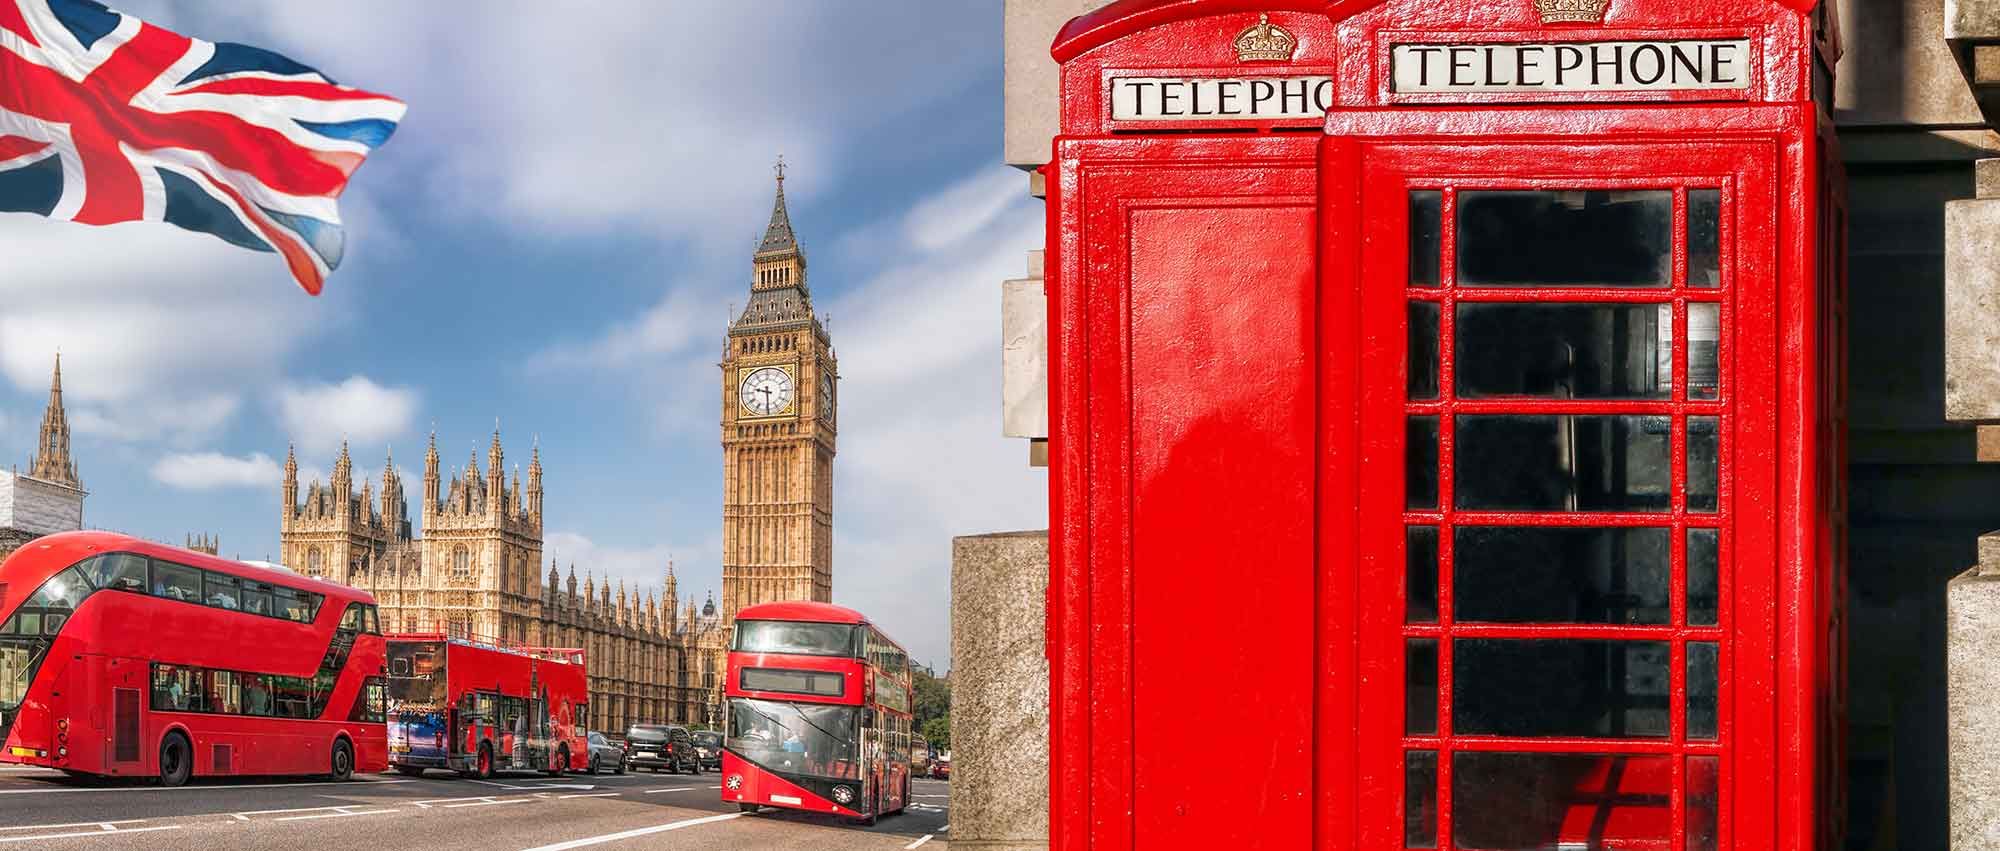 Londres - Descubre Big Ben##Descubre Tower Bridge##Descubre Piccadilly Circus